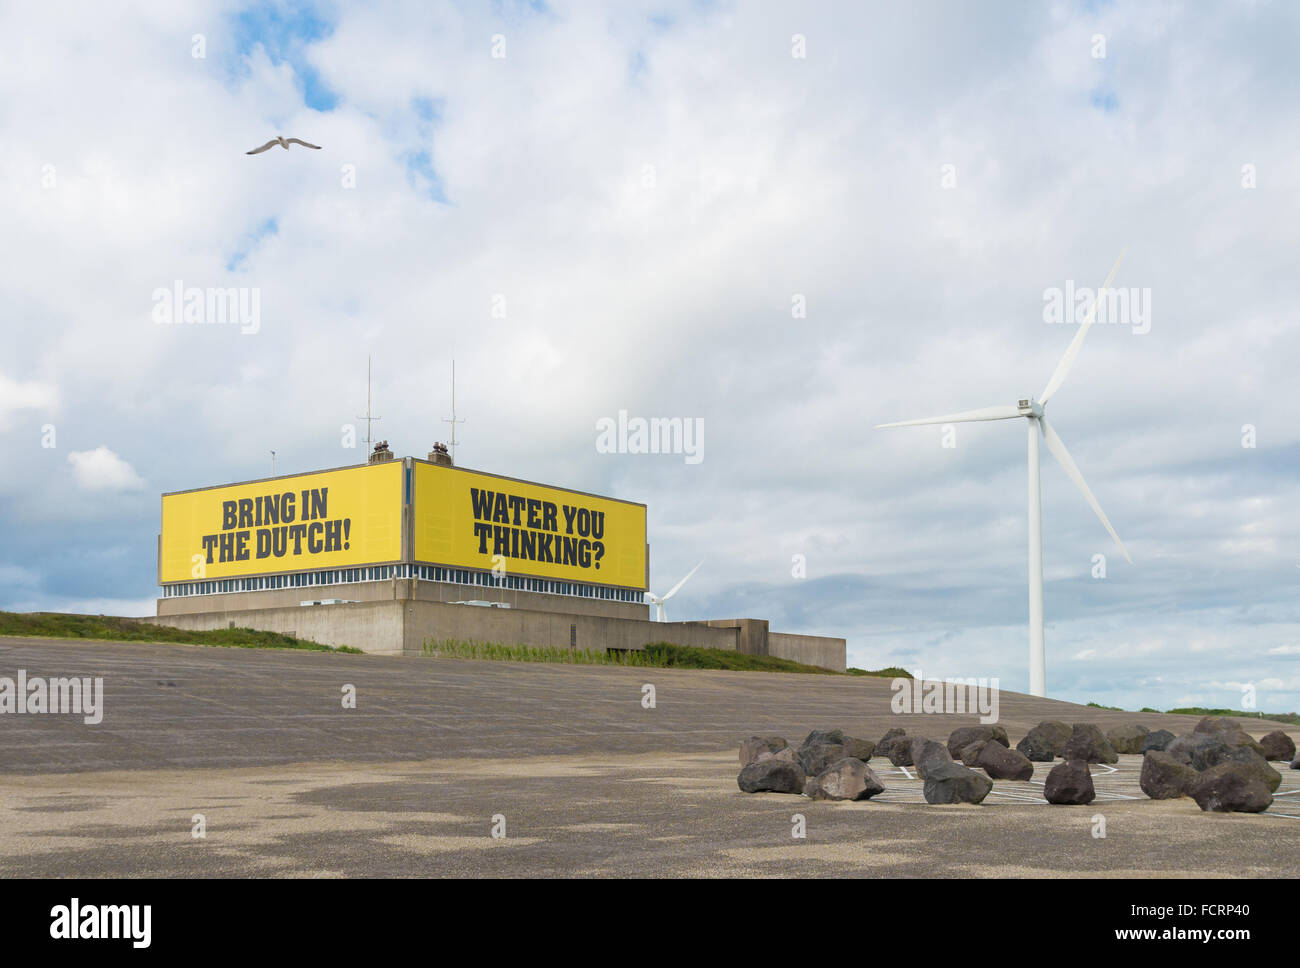 VEERE, Paesi Bassi - Luglio 18, 2015: costruire con il testo sull'isola artificiale Neeltje-reimerswaal Jans in Zeeland come un ricordo della Foto Stock